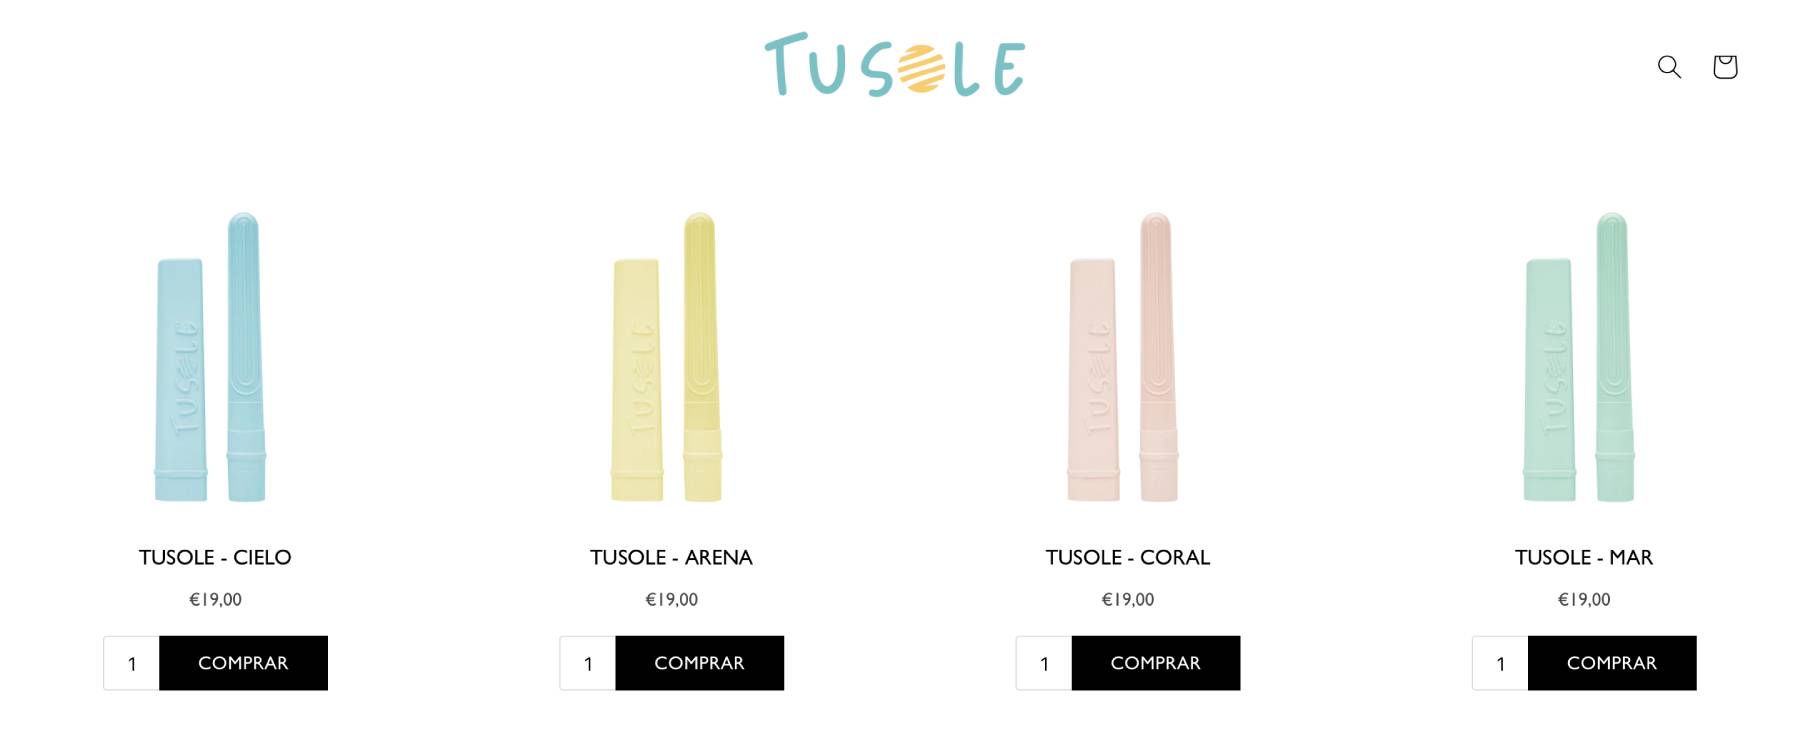 Producto Tusole/ página oficial de 'Tusole'